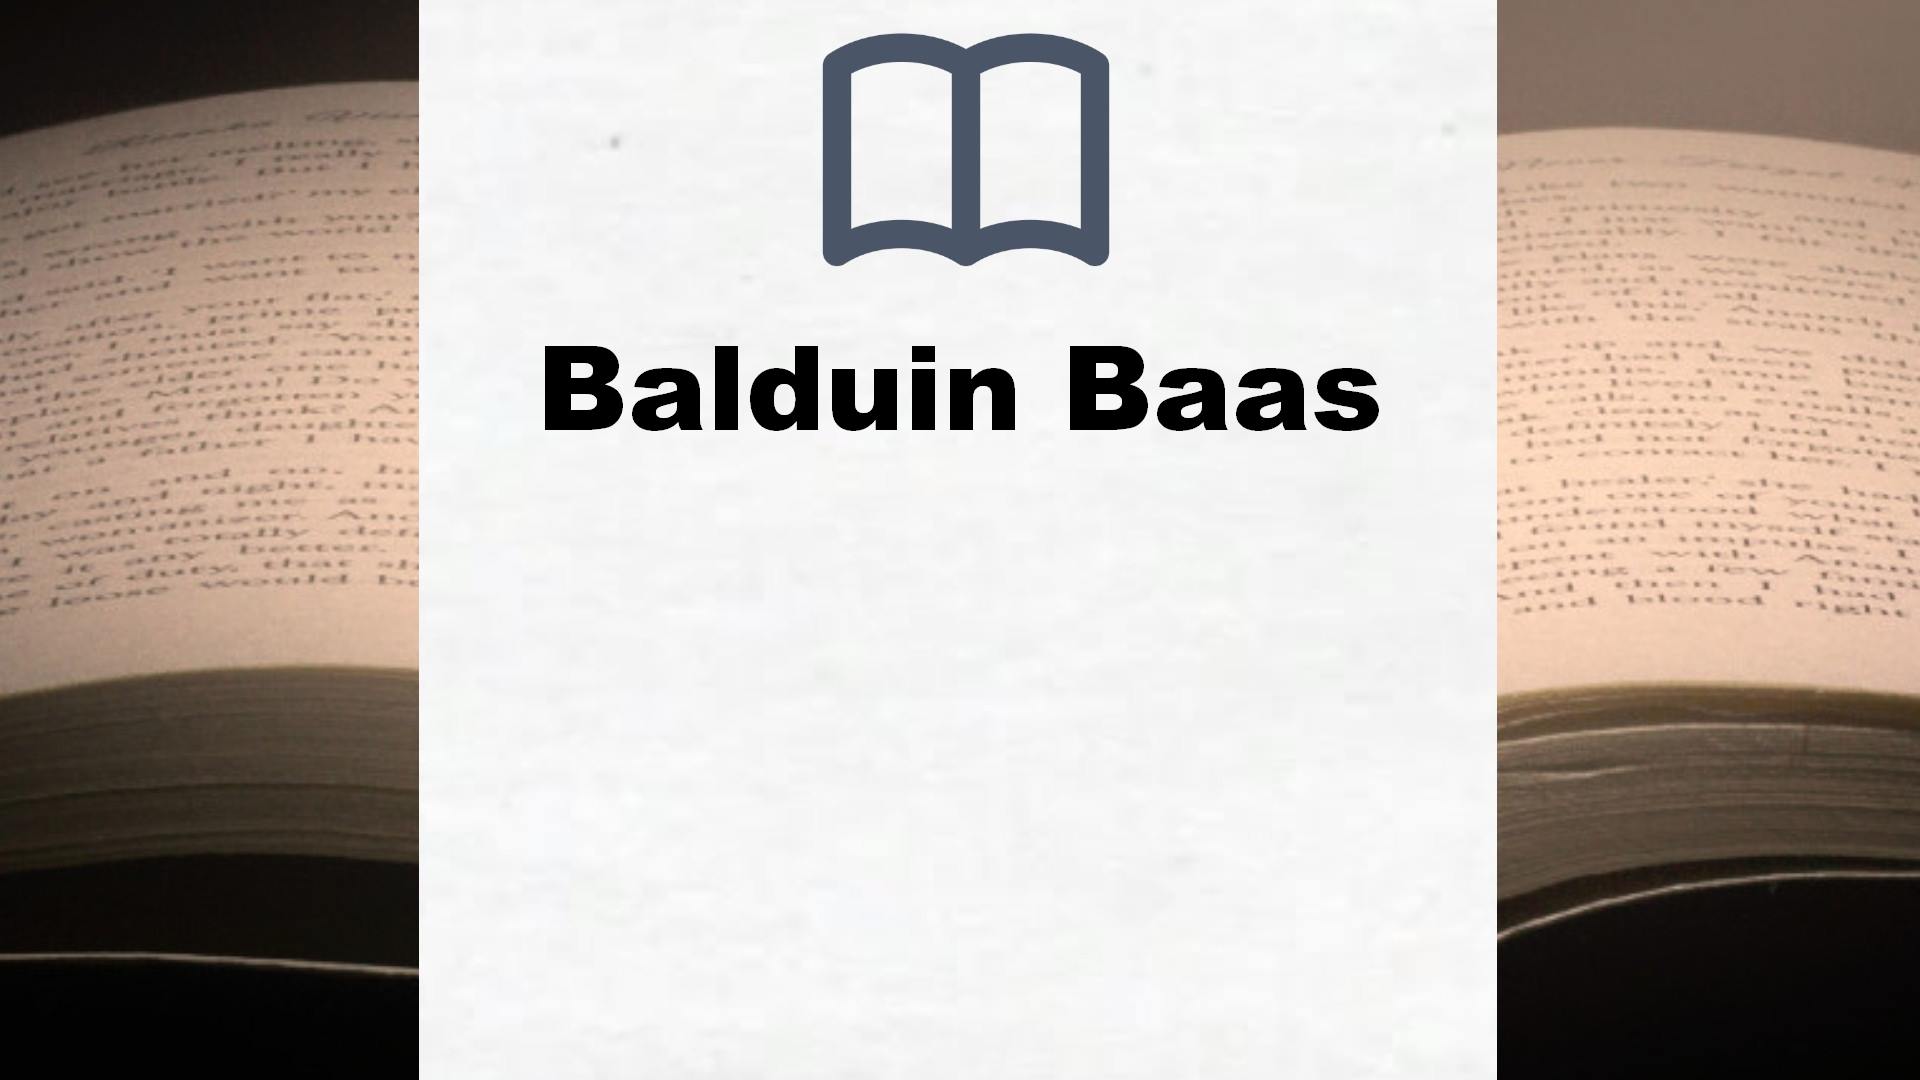 Balduin Baas Bücher